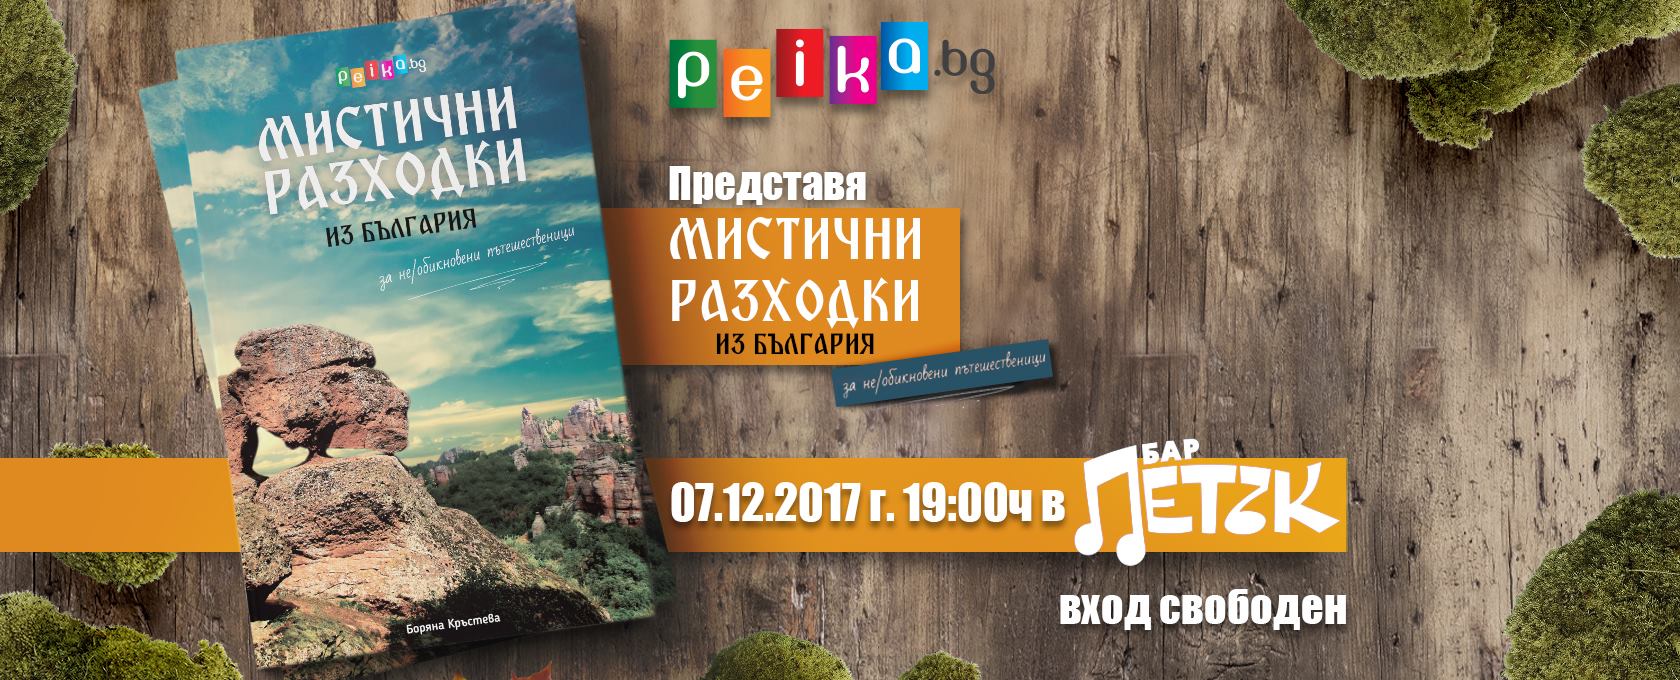 Представяне на новата книга на Peika.bg в бар "Петък"!